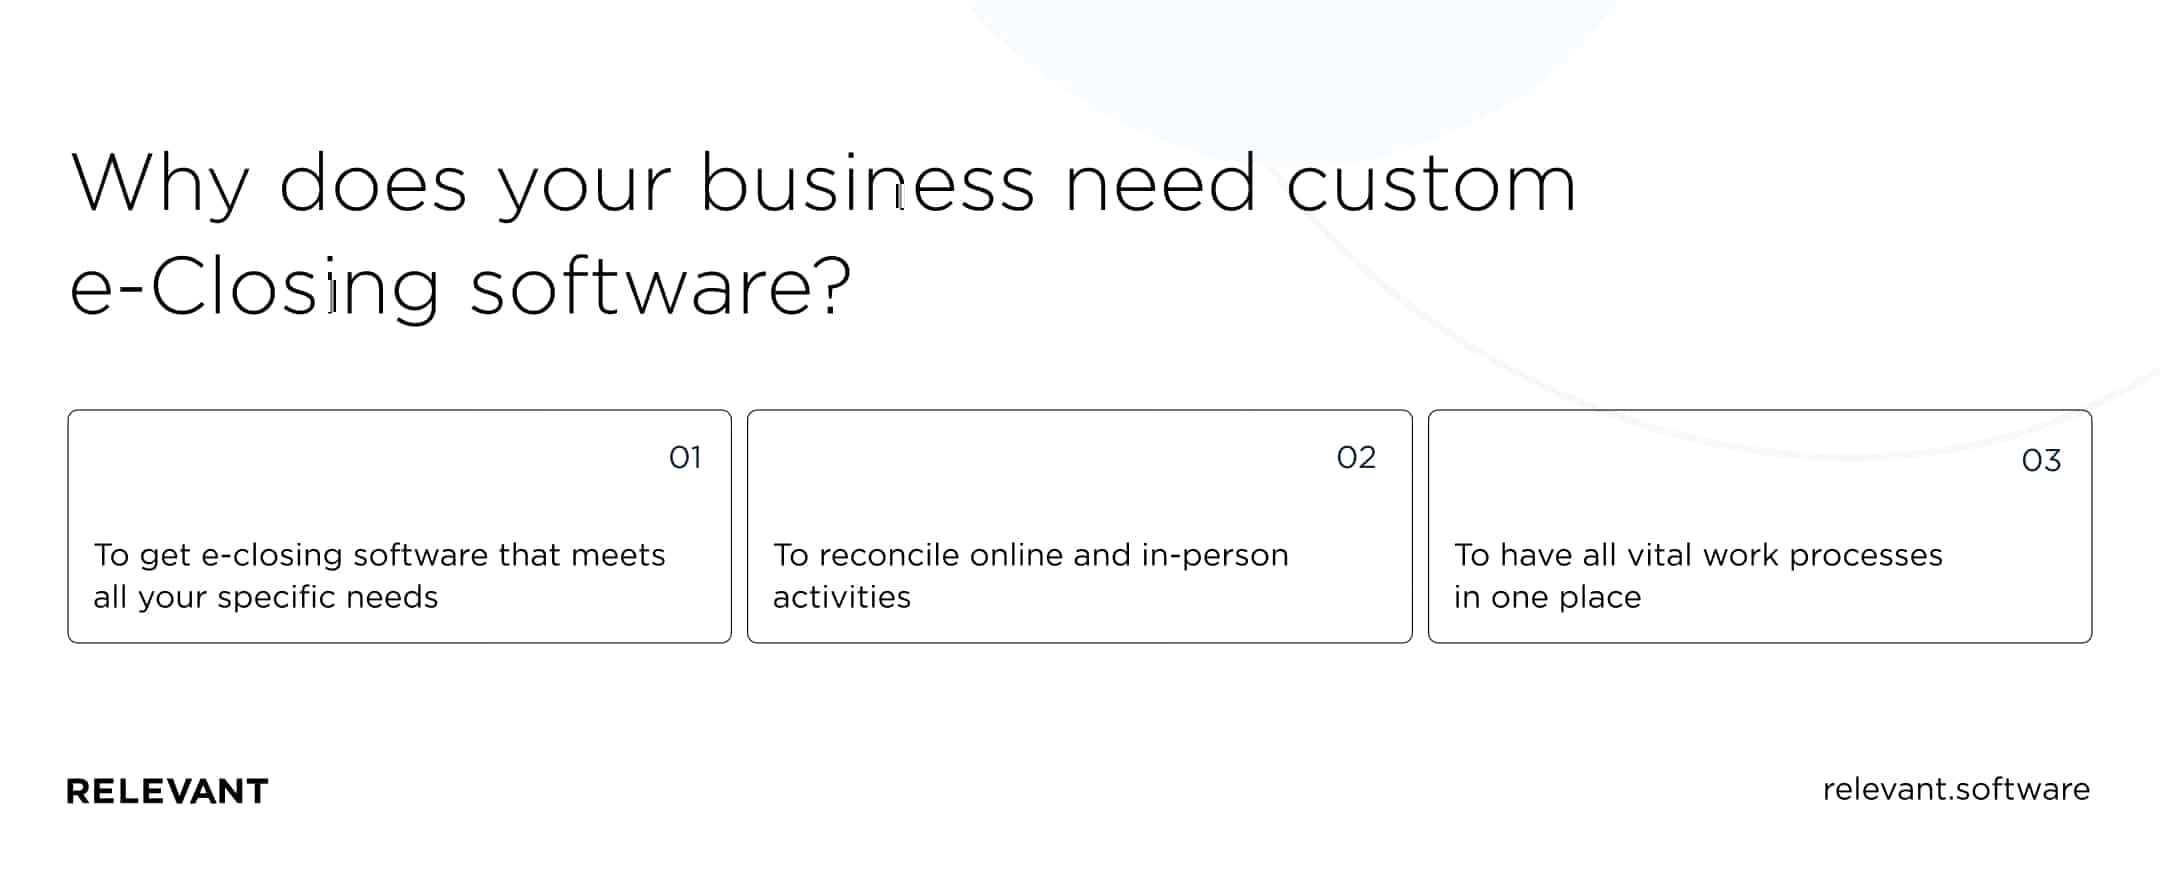 Why your business needs custom e-Closing software